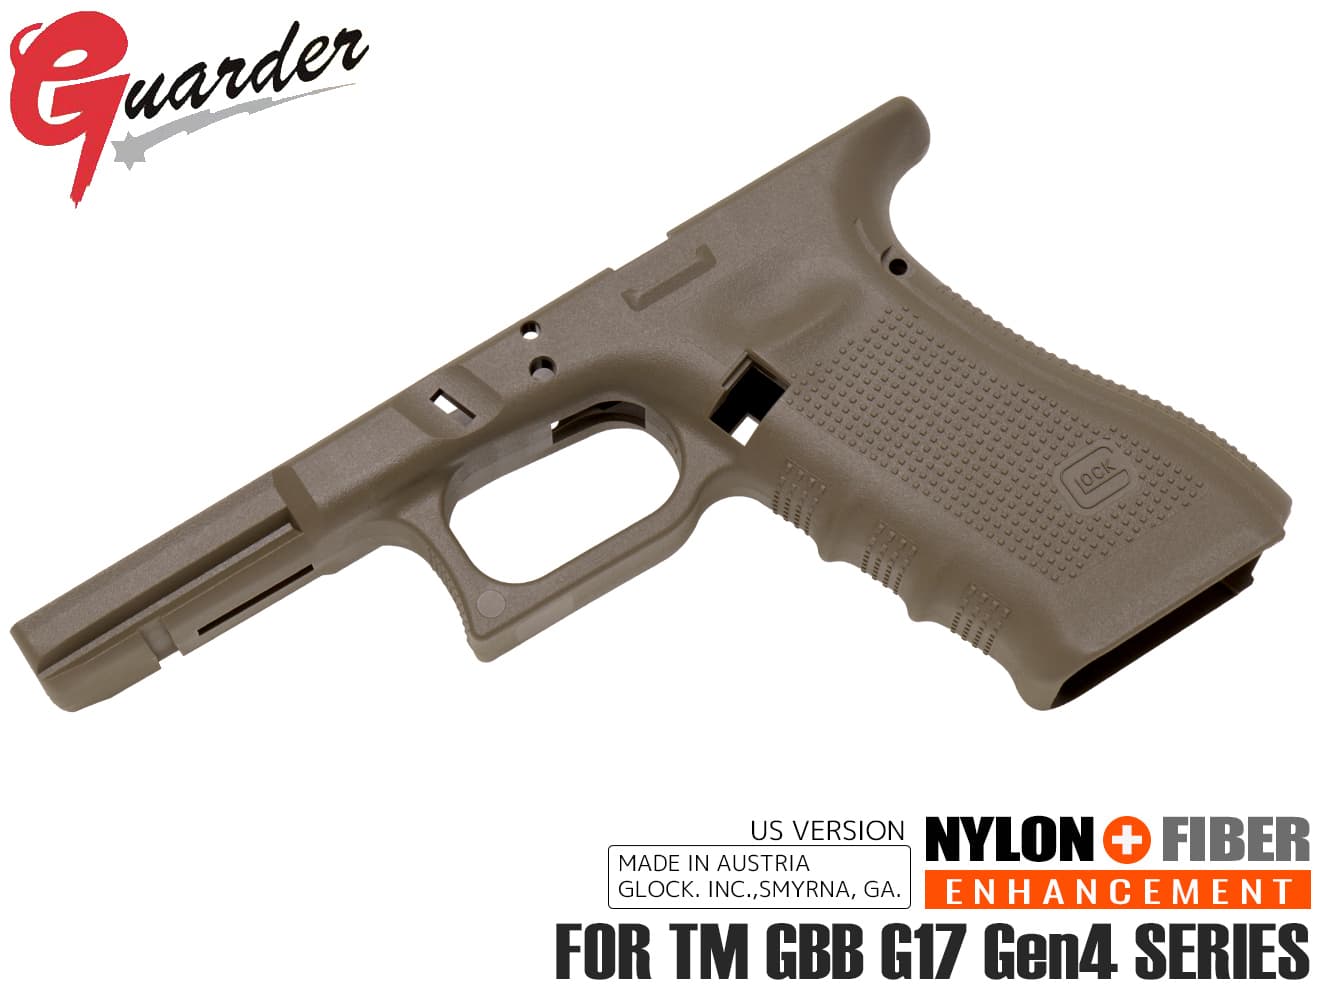 GLK-230(FDE)■GUARDER GLOCK Gen.4 オリジナルフレーム US Ver for マルイ G17 Gen4◆グロック ガスブローバック 実銃素材 刻印入り マットな質感/強度アップ